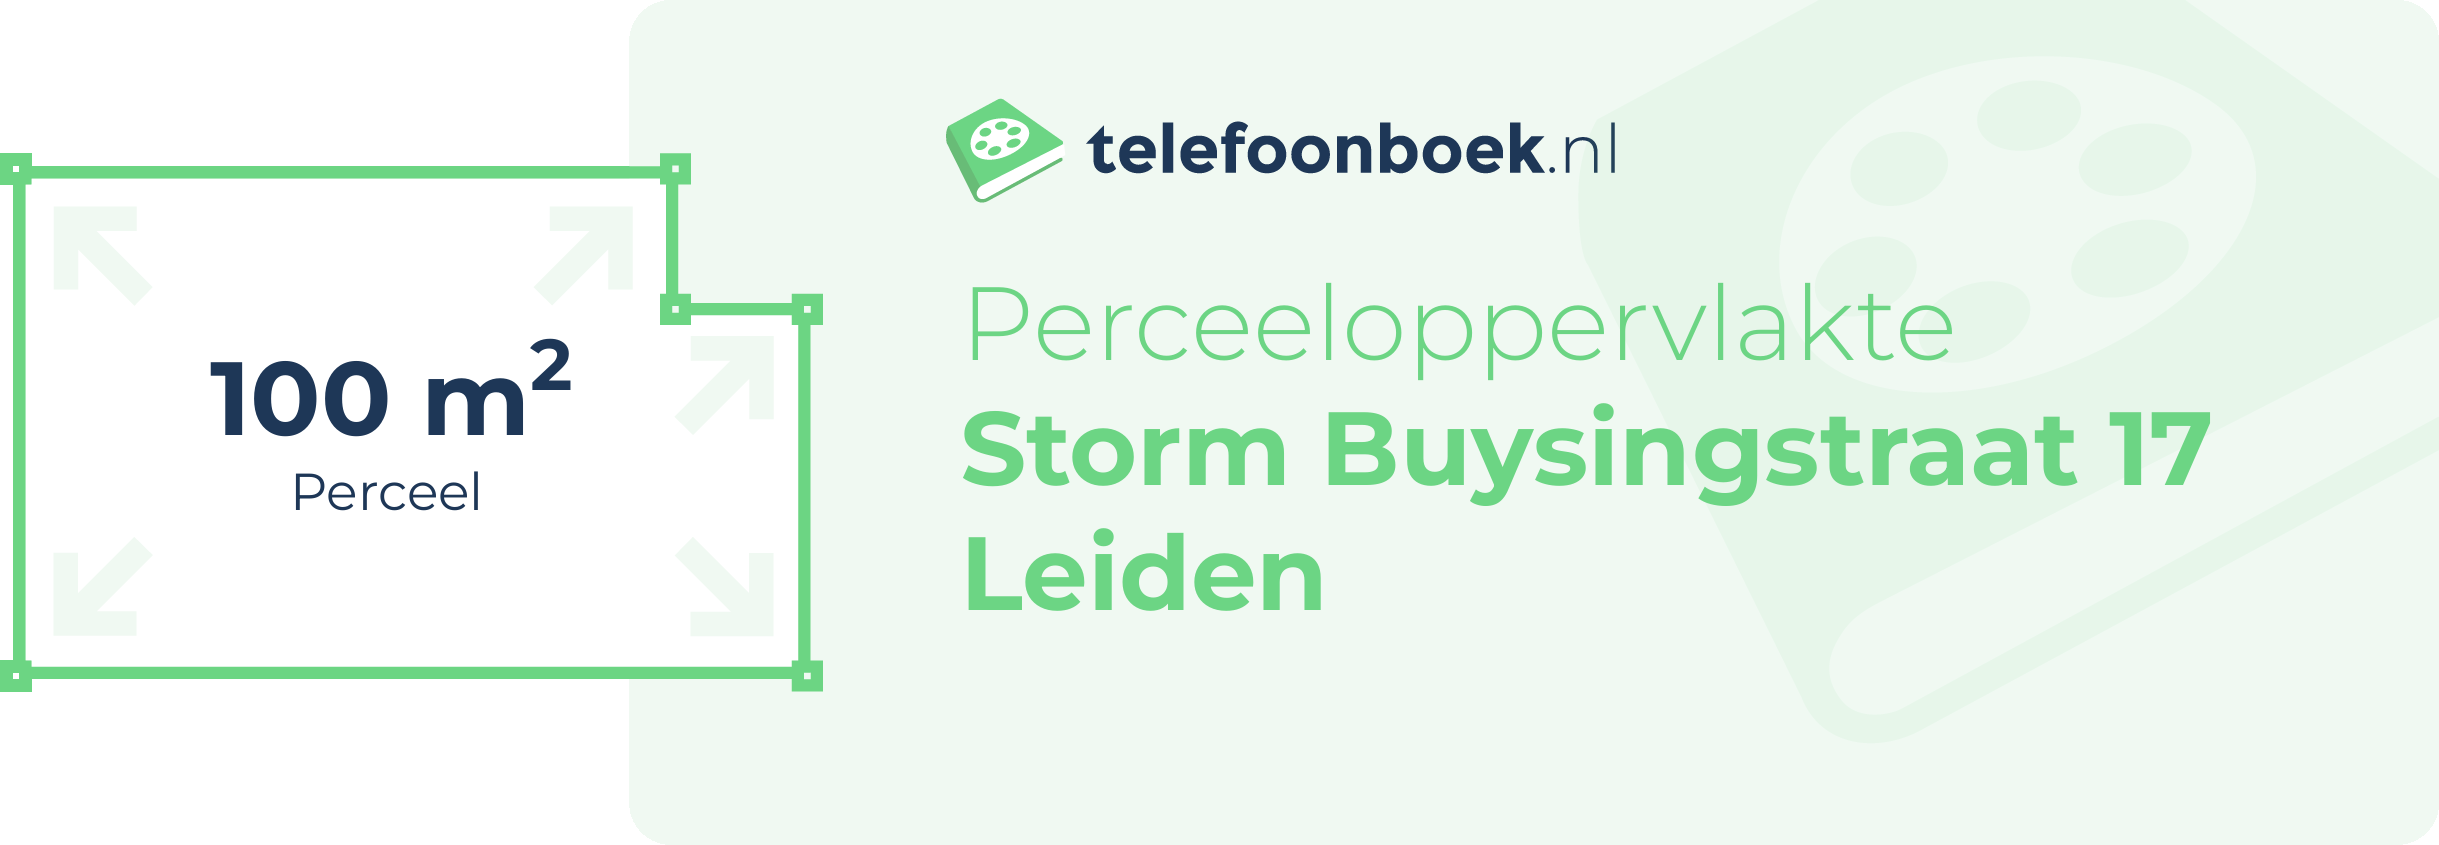 Perceeloppervlakte Storm Buysingstraat 17 Leiden